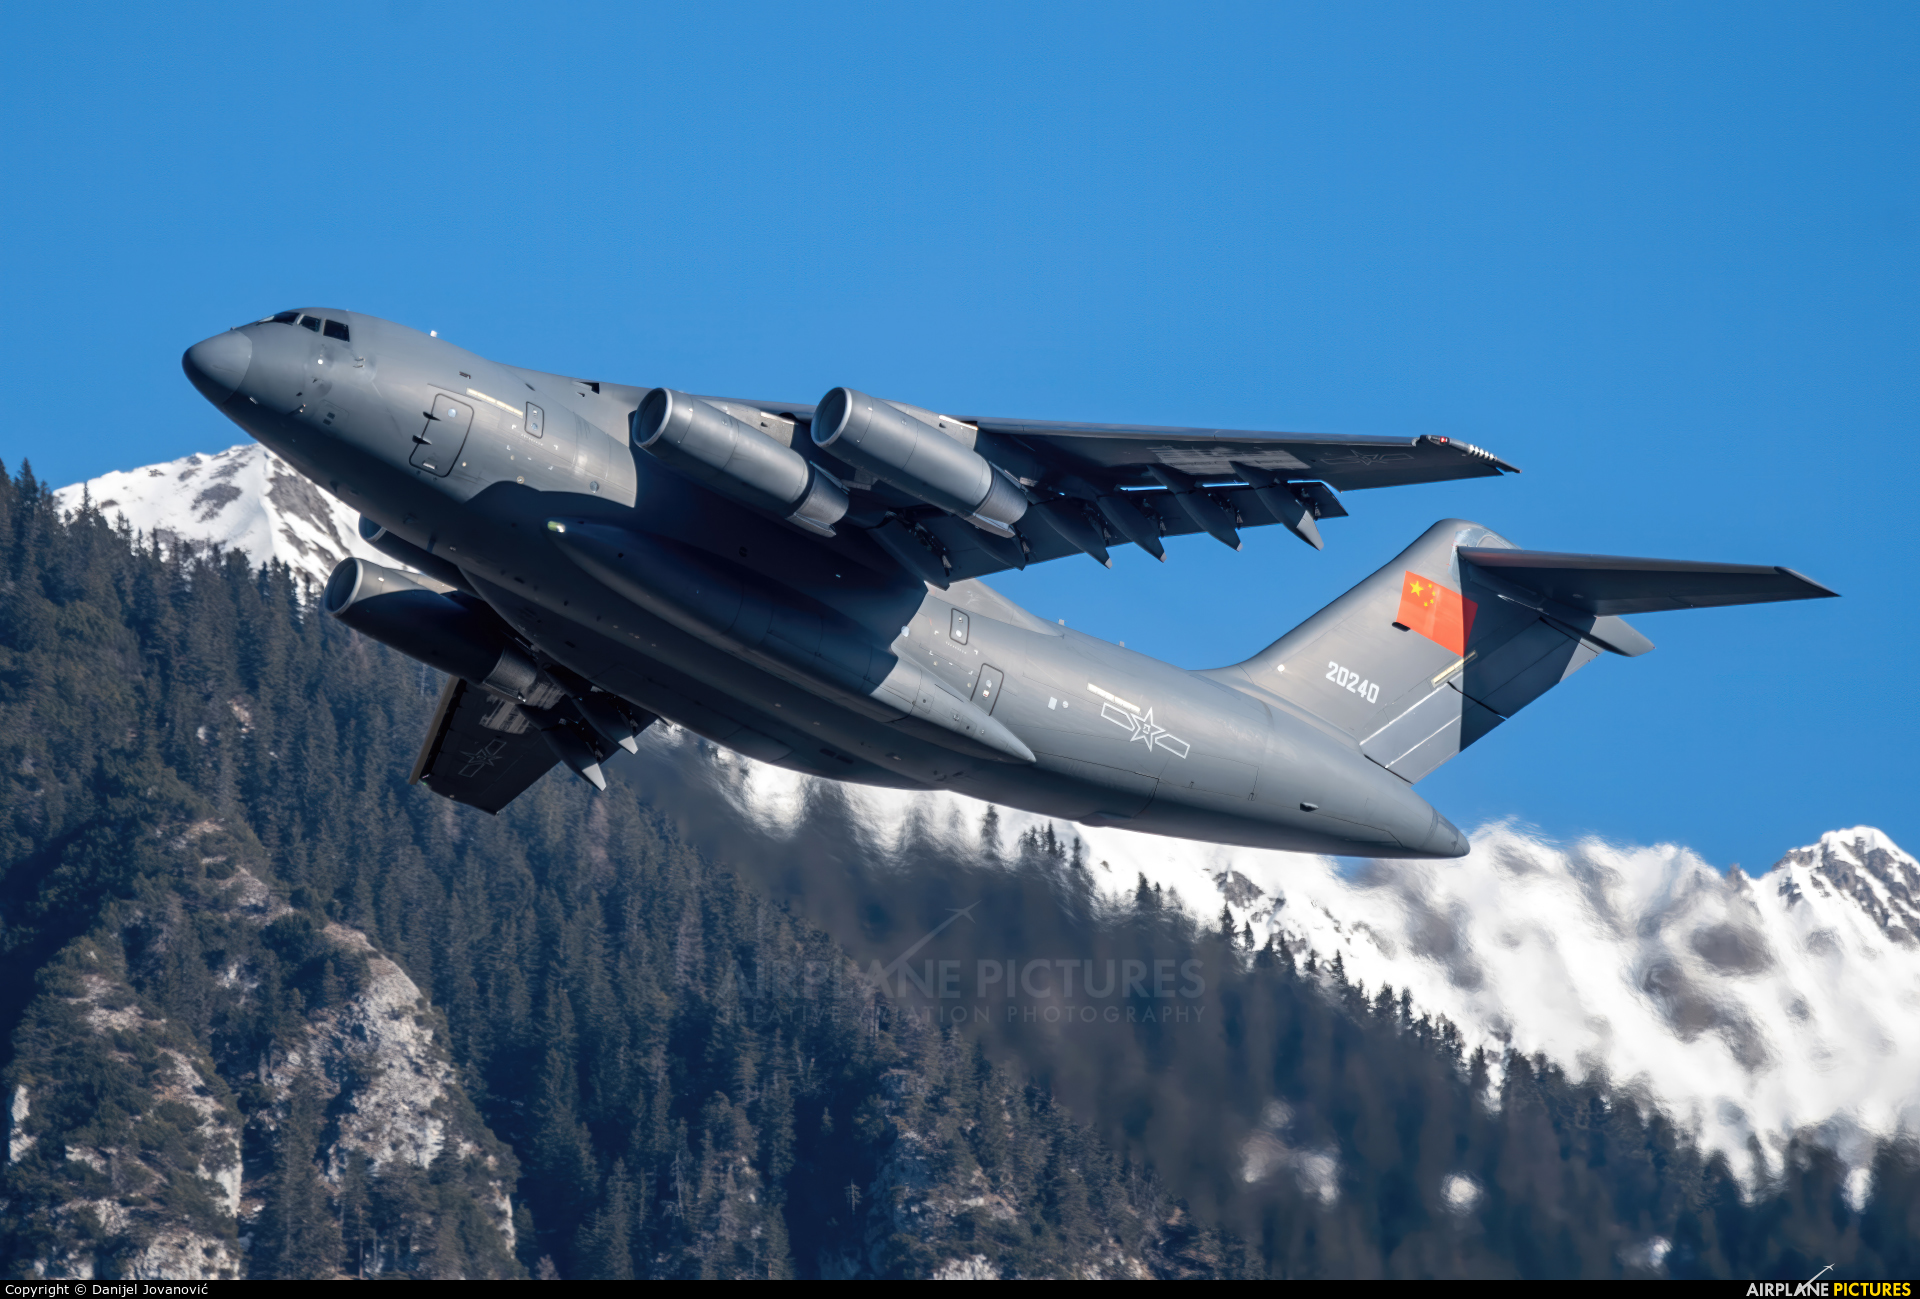 China - Air Force 20240 aircraft at Innsbruck